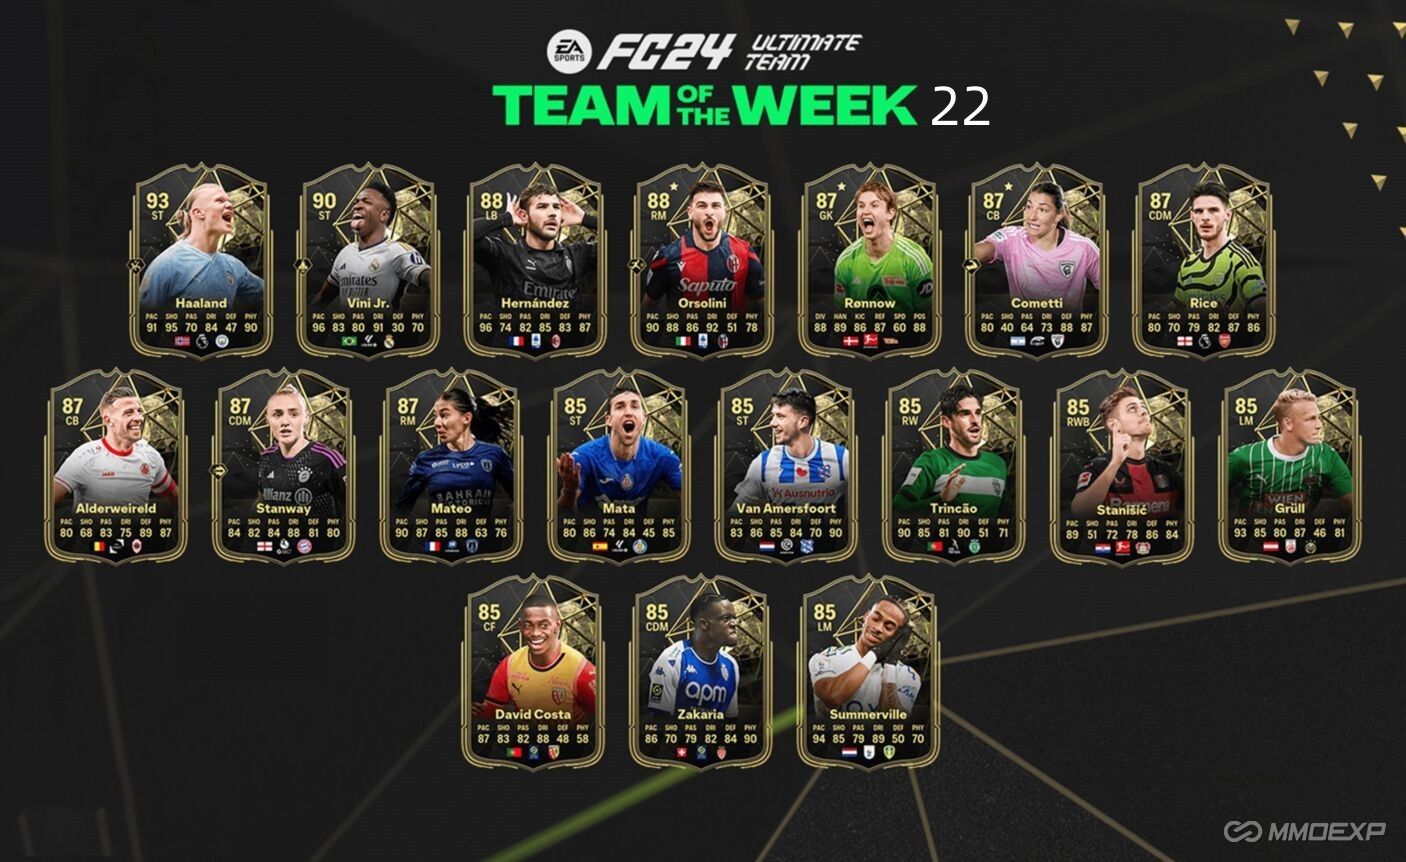 EA FC 24 TOTW 22: Team of the Week 22 Card Revealed